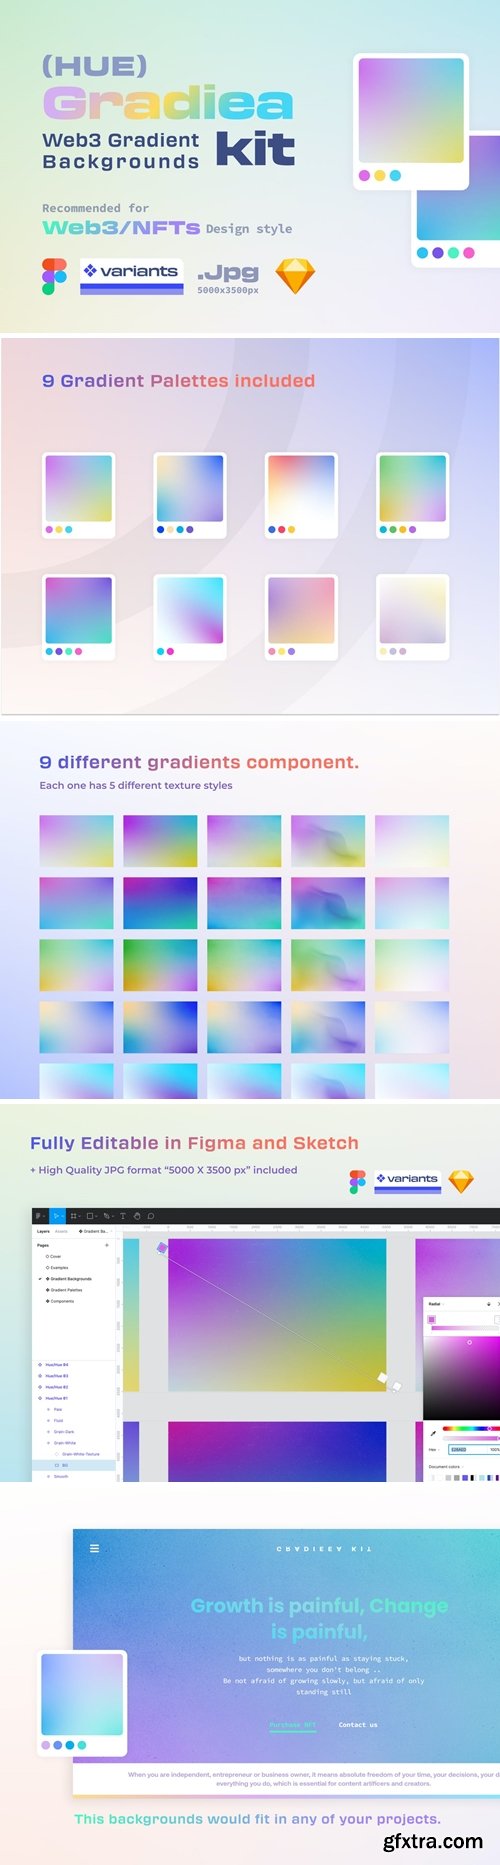 Gradiea Kit - Web3 Gradient Backgrounds (Hue Ver.)